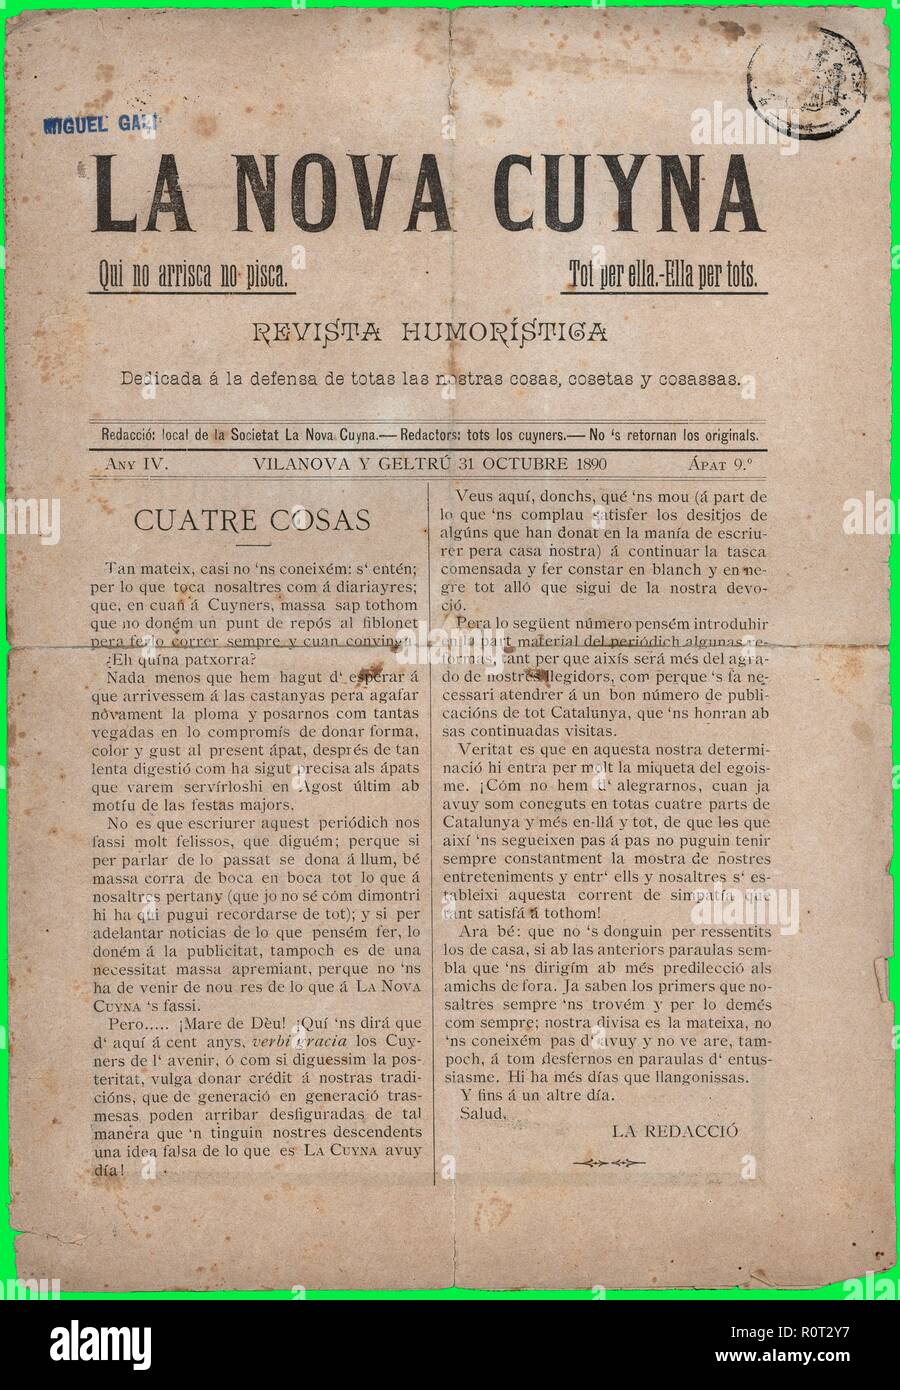 Portada de la revista humorística La Nova Cuyna, editada en Vilanova i la Geltrú, octubre de 1890. Stock Photo